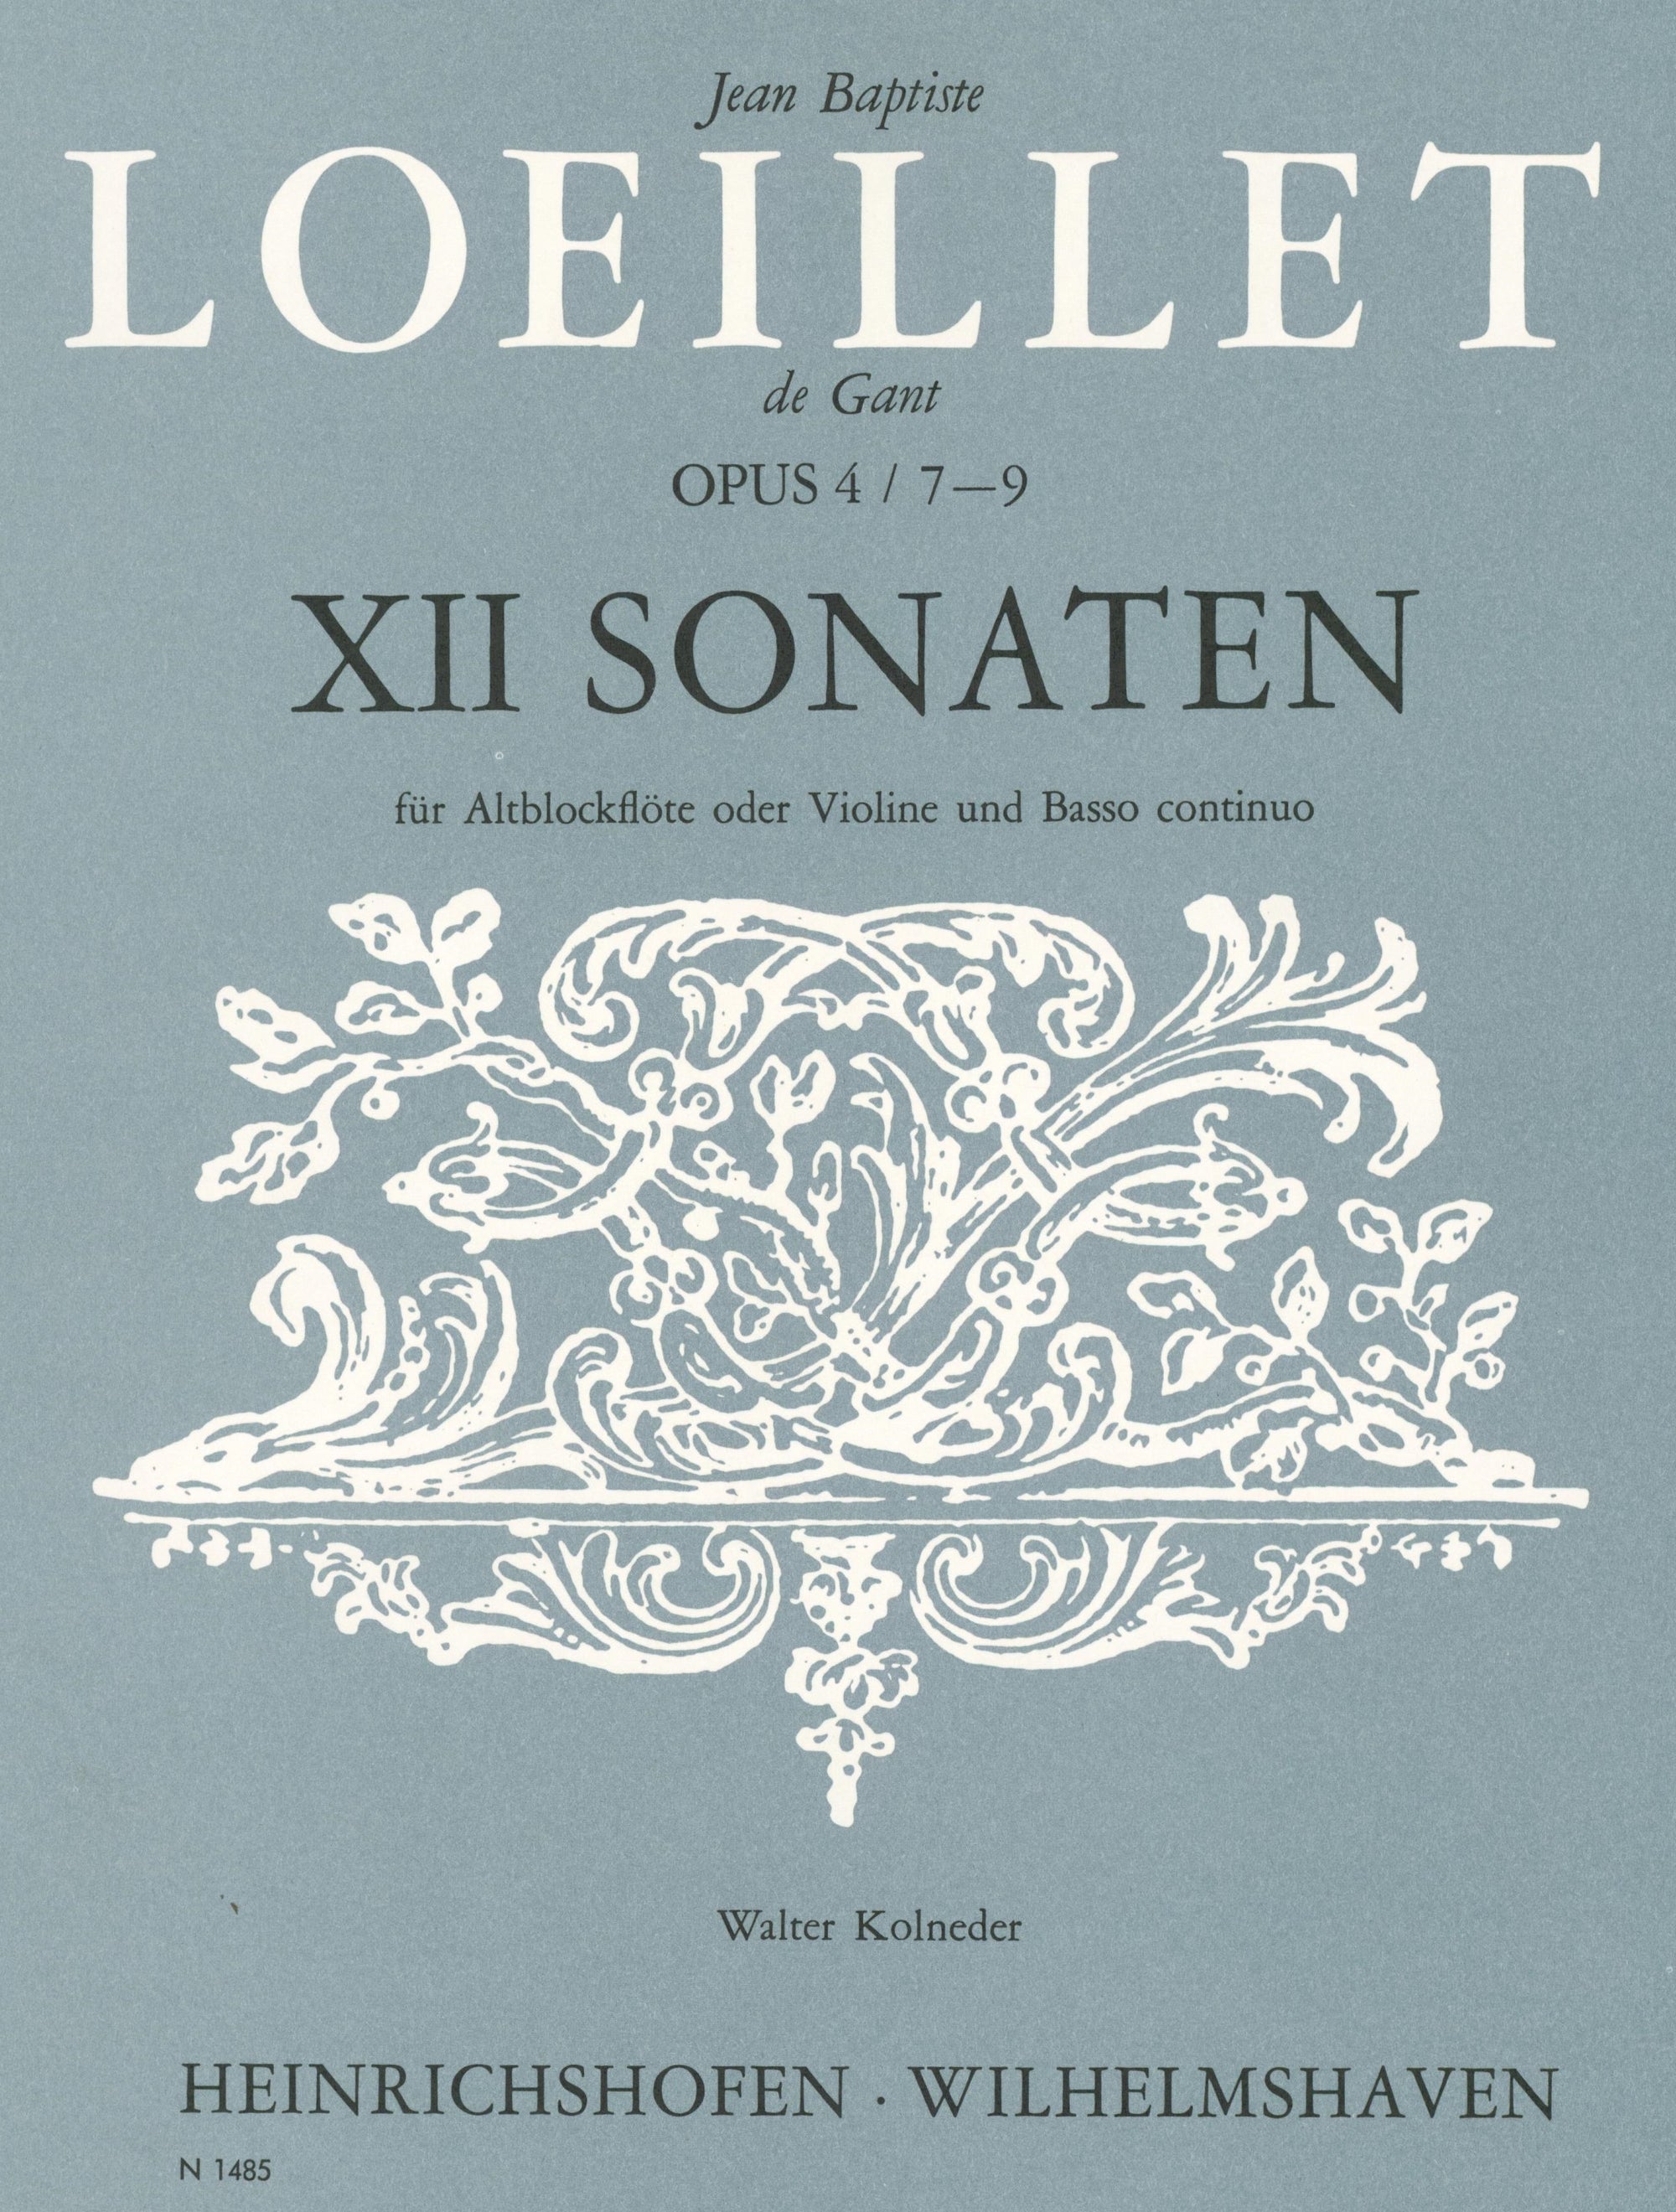 Loeillet: Recorder Sonatas, Op. 4, Nos. 7-9